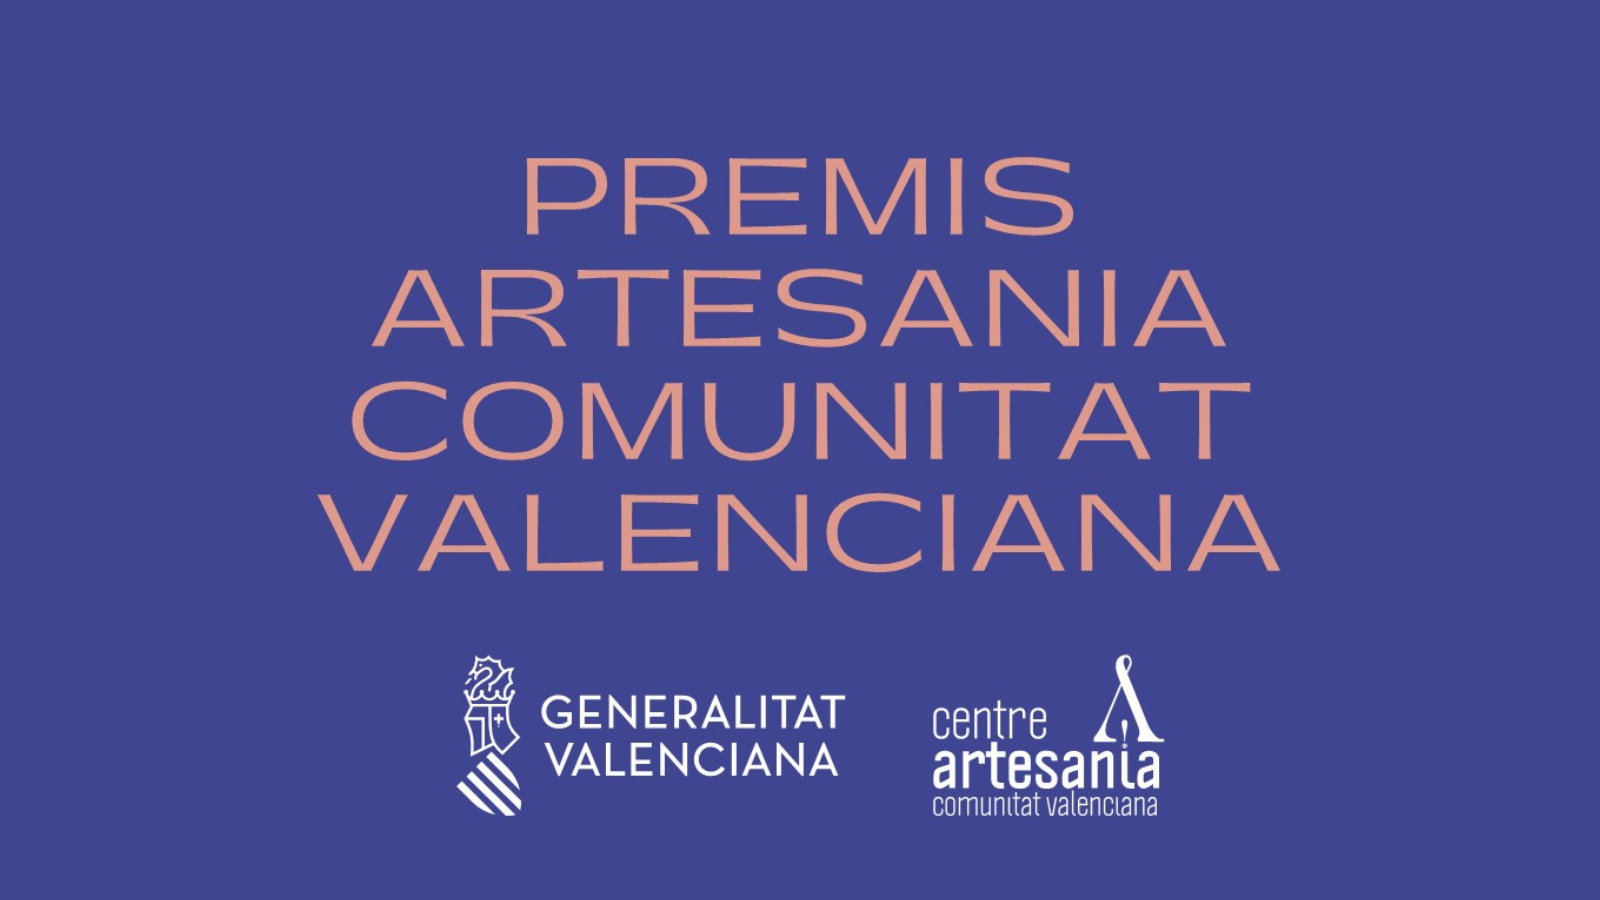 Cartel de los Premios Artesanía Comunitat Valenciana, con las letras en mayúsculas en color naranja sobre fondo azul oscuro. Abajo están los logos de la Generalitat Valenciana y del Centro de Artesanía